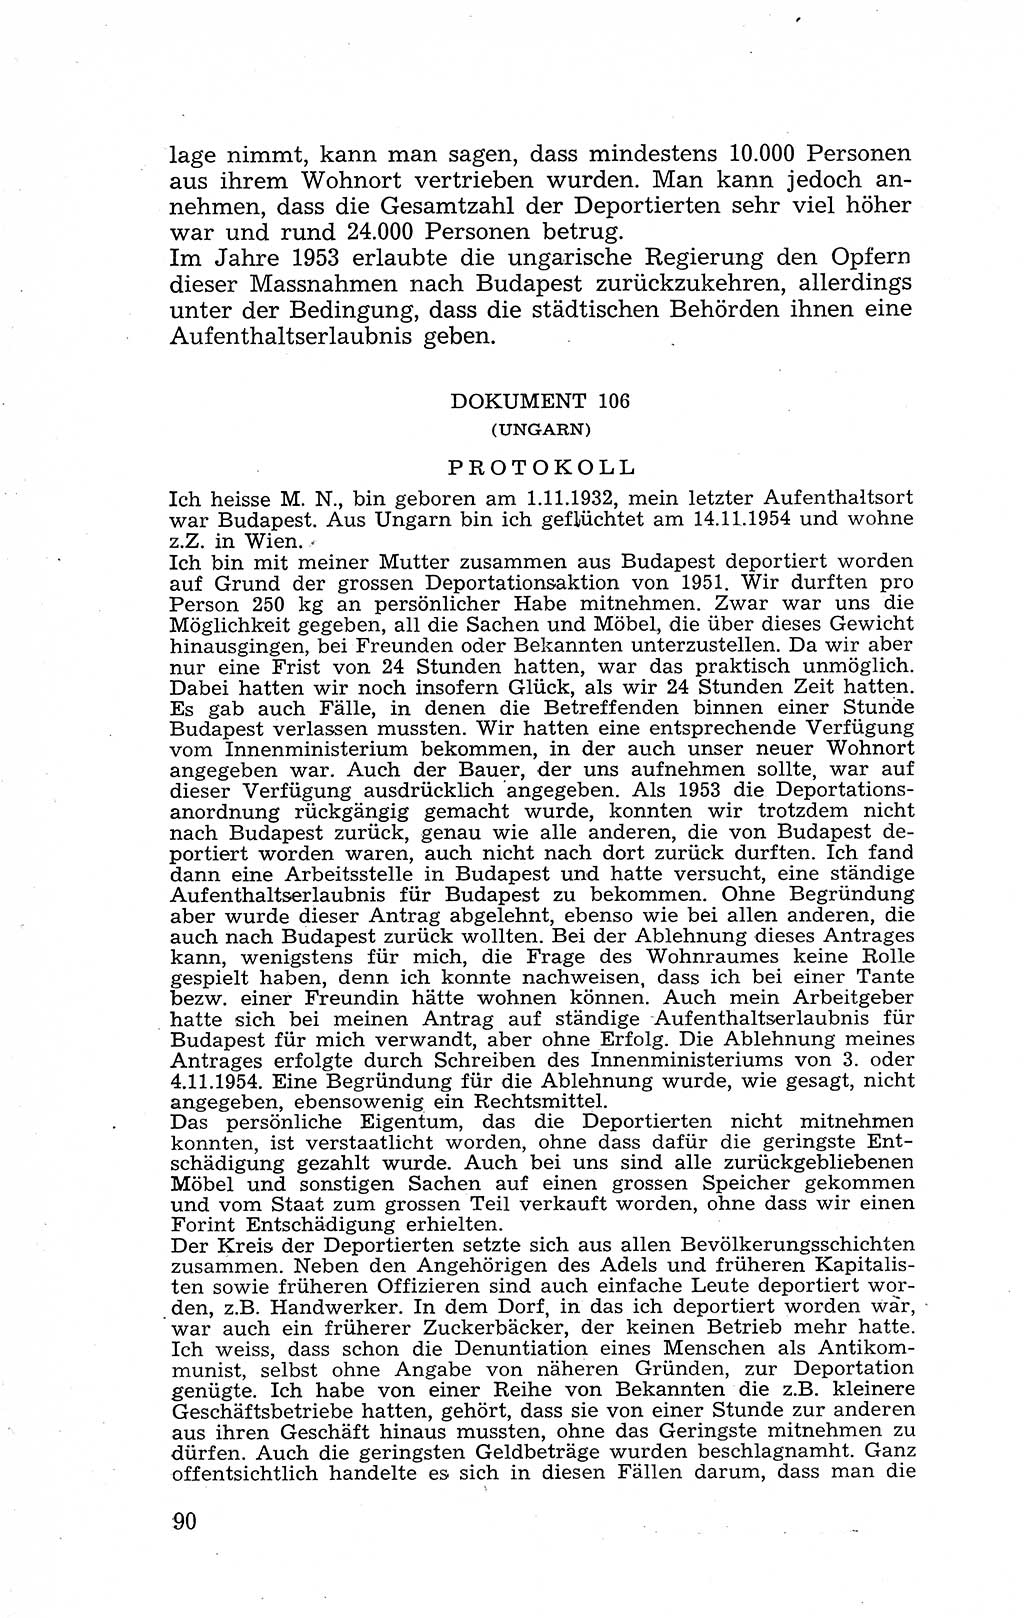 Recht in Fesseln, Dokumente, Internationale Juristen-Kommission [Bundesrepublik Deutschland (BRD)] 1955, Seite 90 (R. Dok. IJK BRD 1955, S. 90)